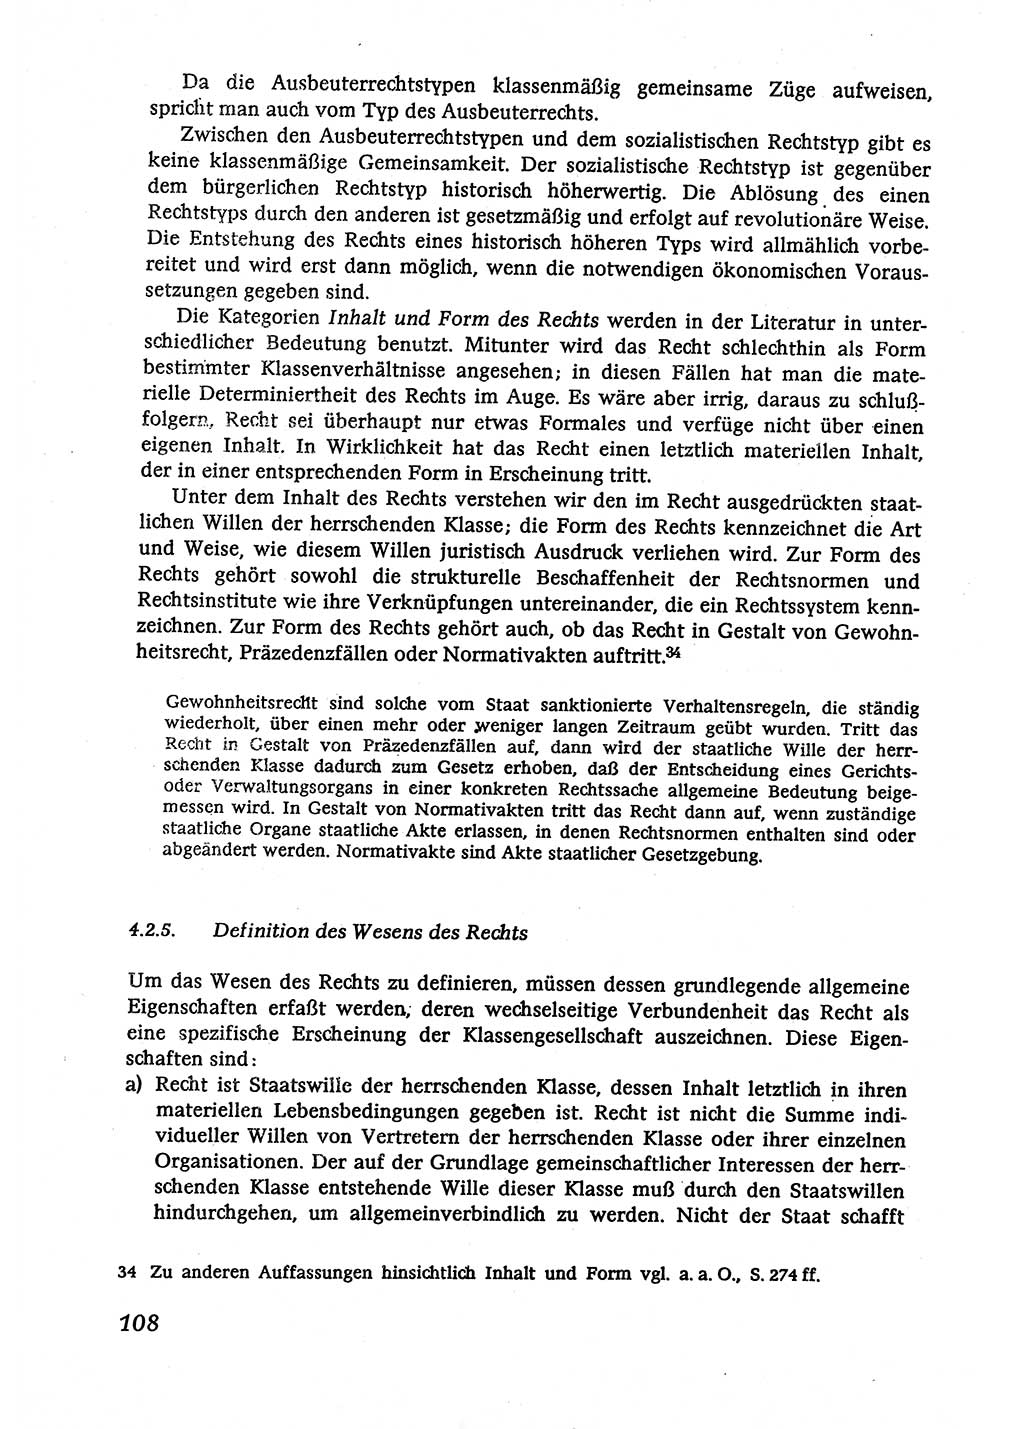 Marxistisch-leninistische (ML) Staats- und Rechtstheorie [Deutsche Demokratische Republik (DDR)], Lehrbuch 1980, Seite 108 (ML St.-R.-Th. DDR Lb. 1980, S. 108)